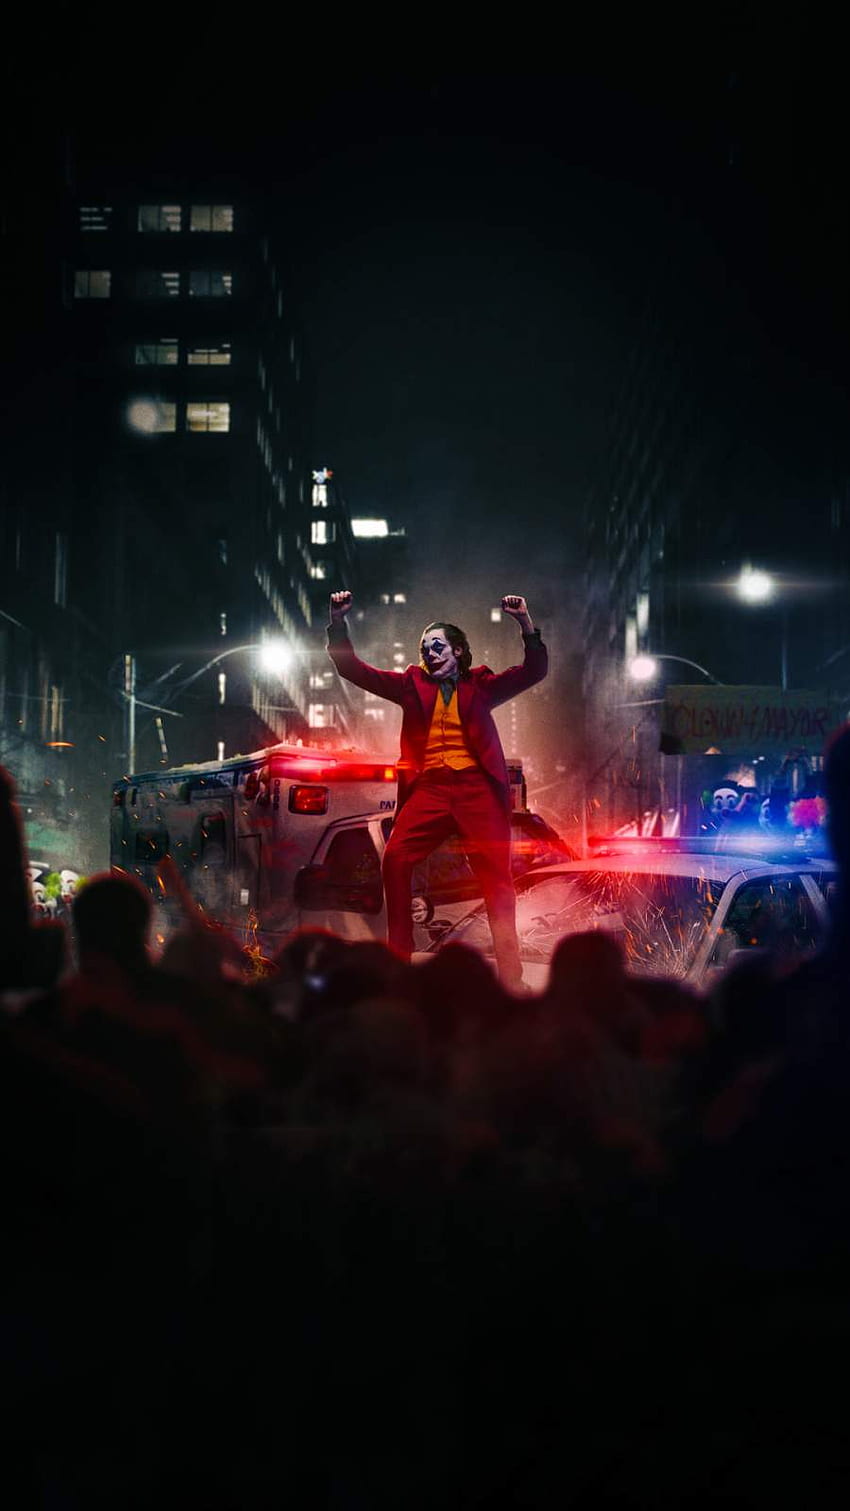 Coringa dançando no carro da polícia iPhone - iPhone : iPhone Papel de parede de celular HD